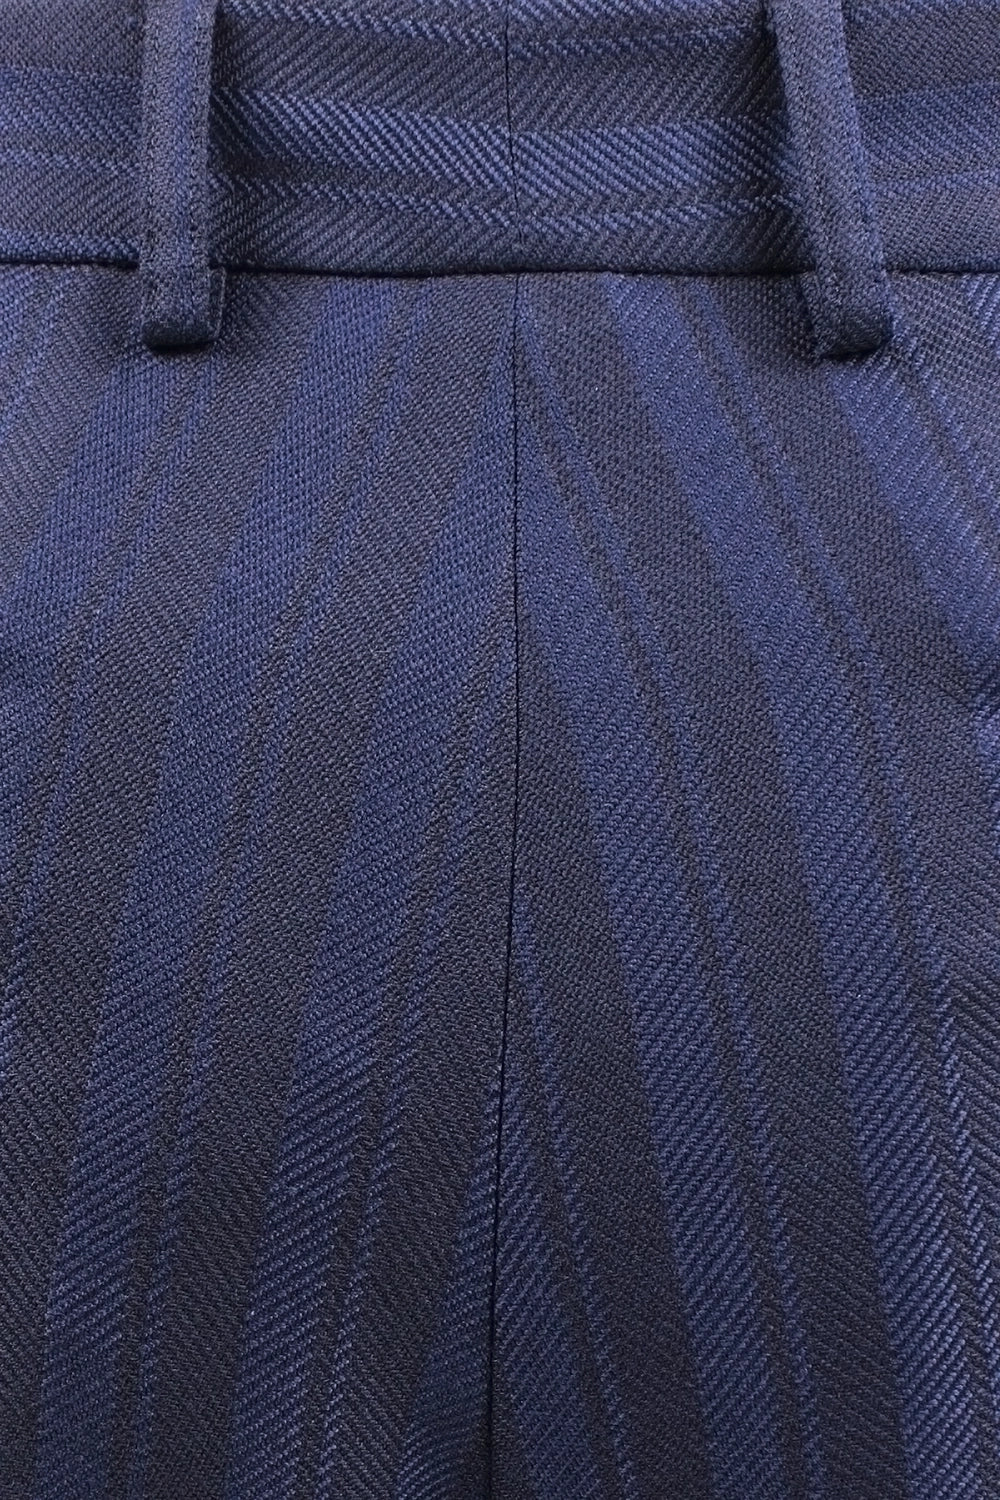 Pantalone con due pinces in lana a righe blu tassuto